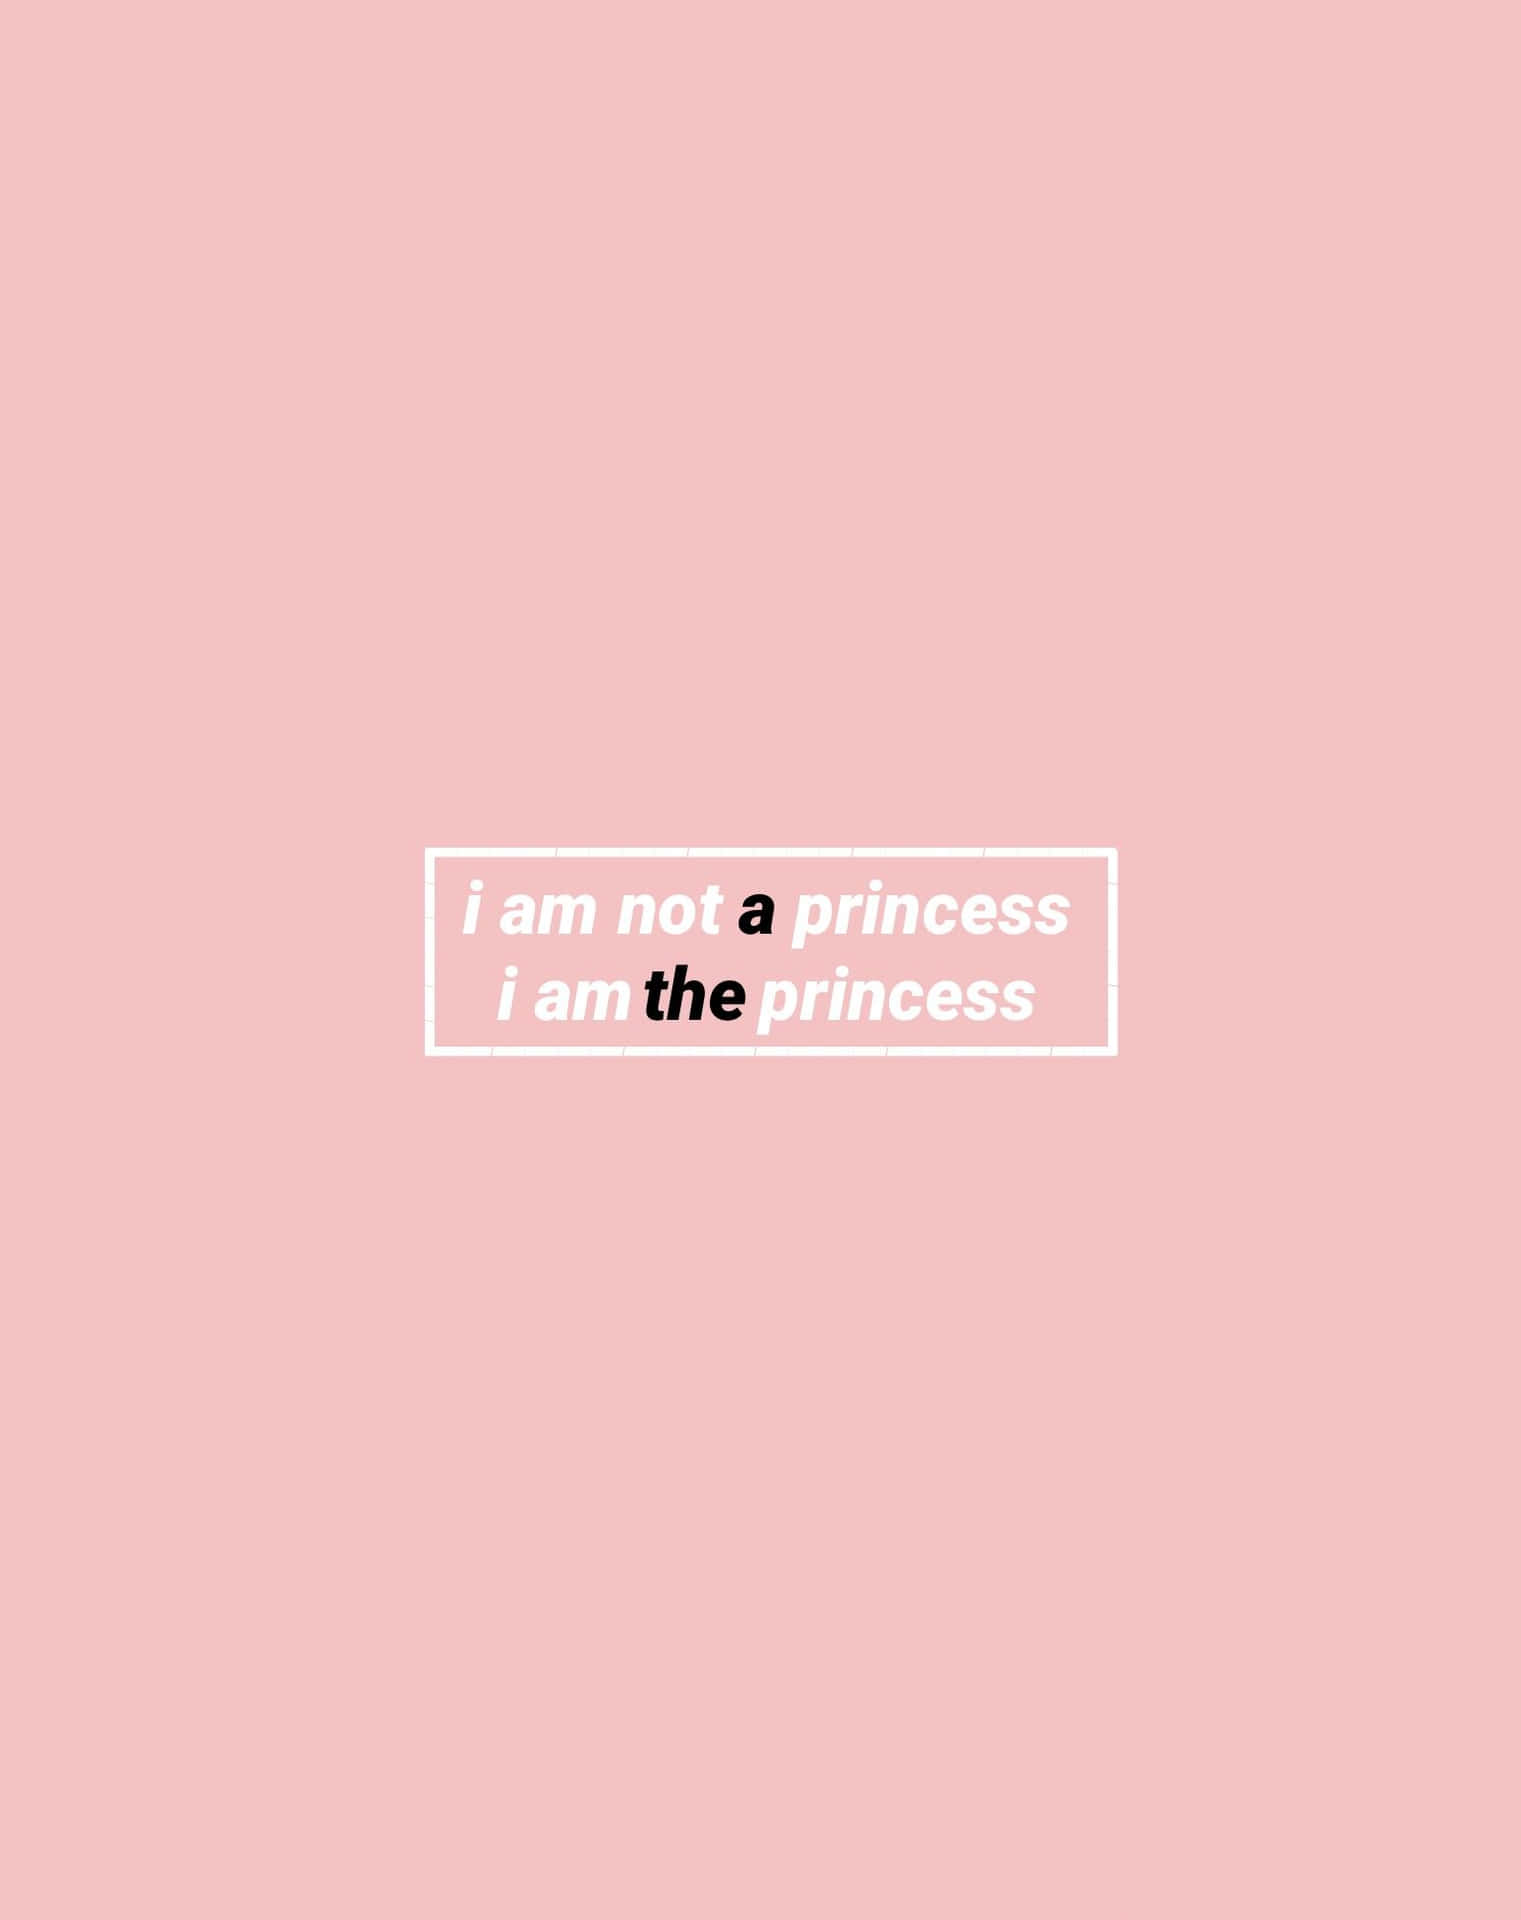 i am a princess is the princess wallpaper